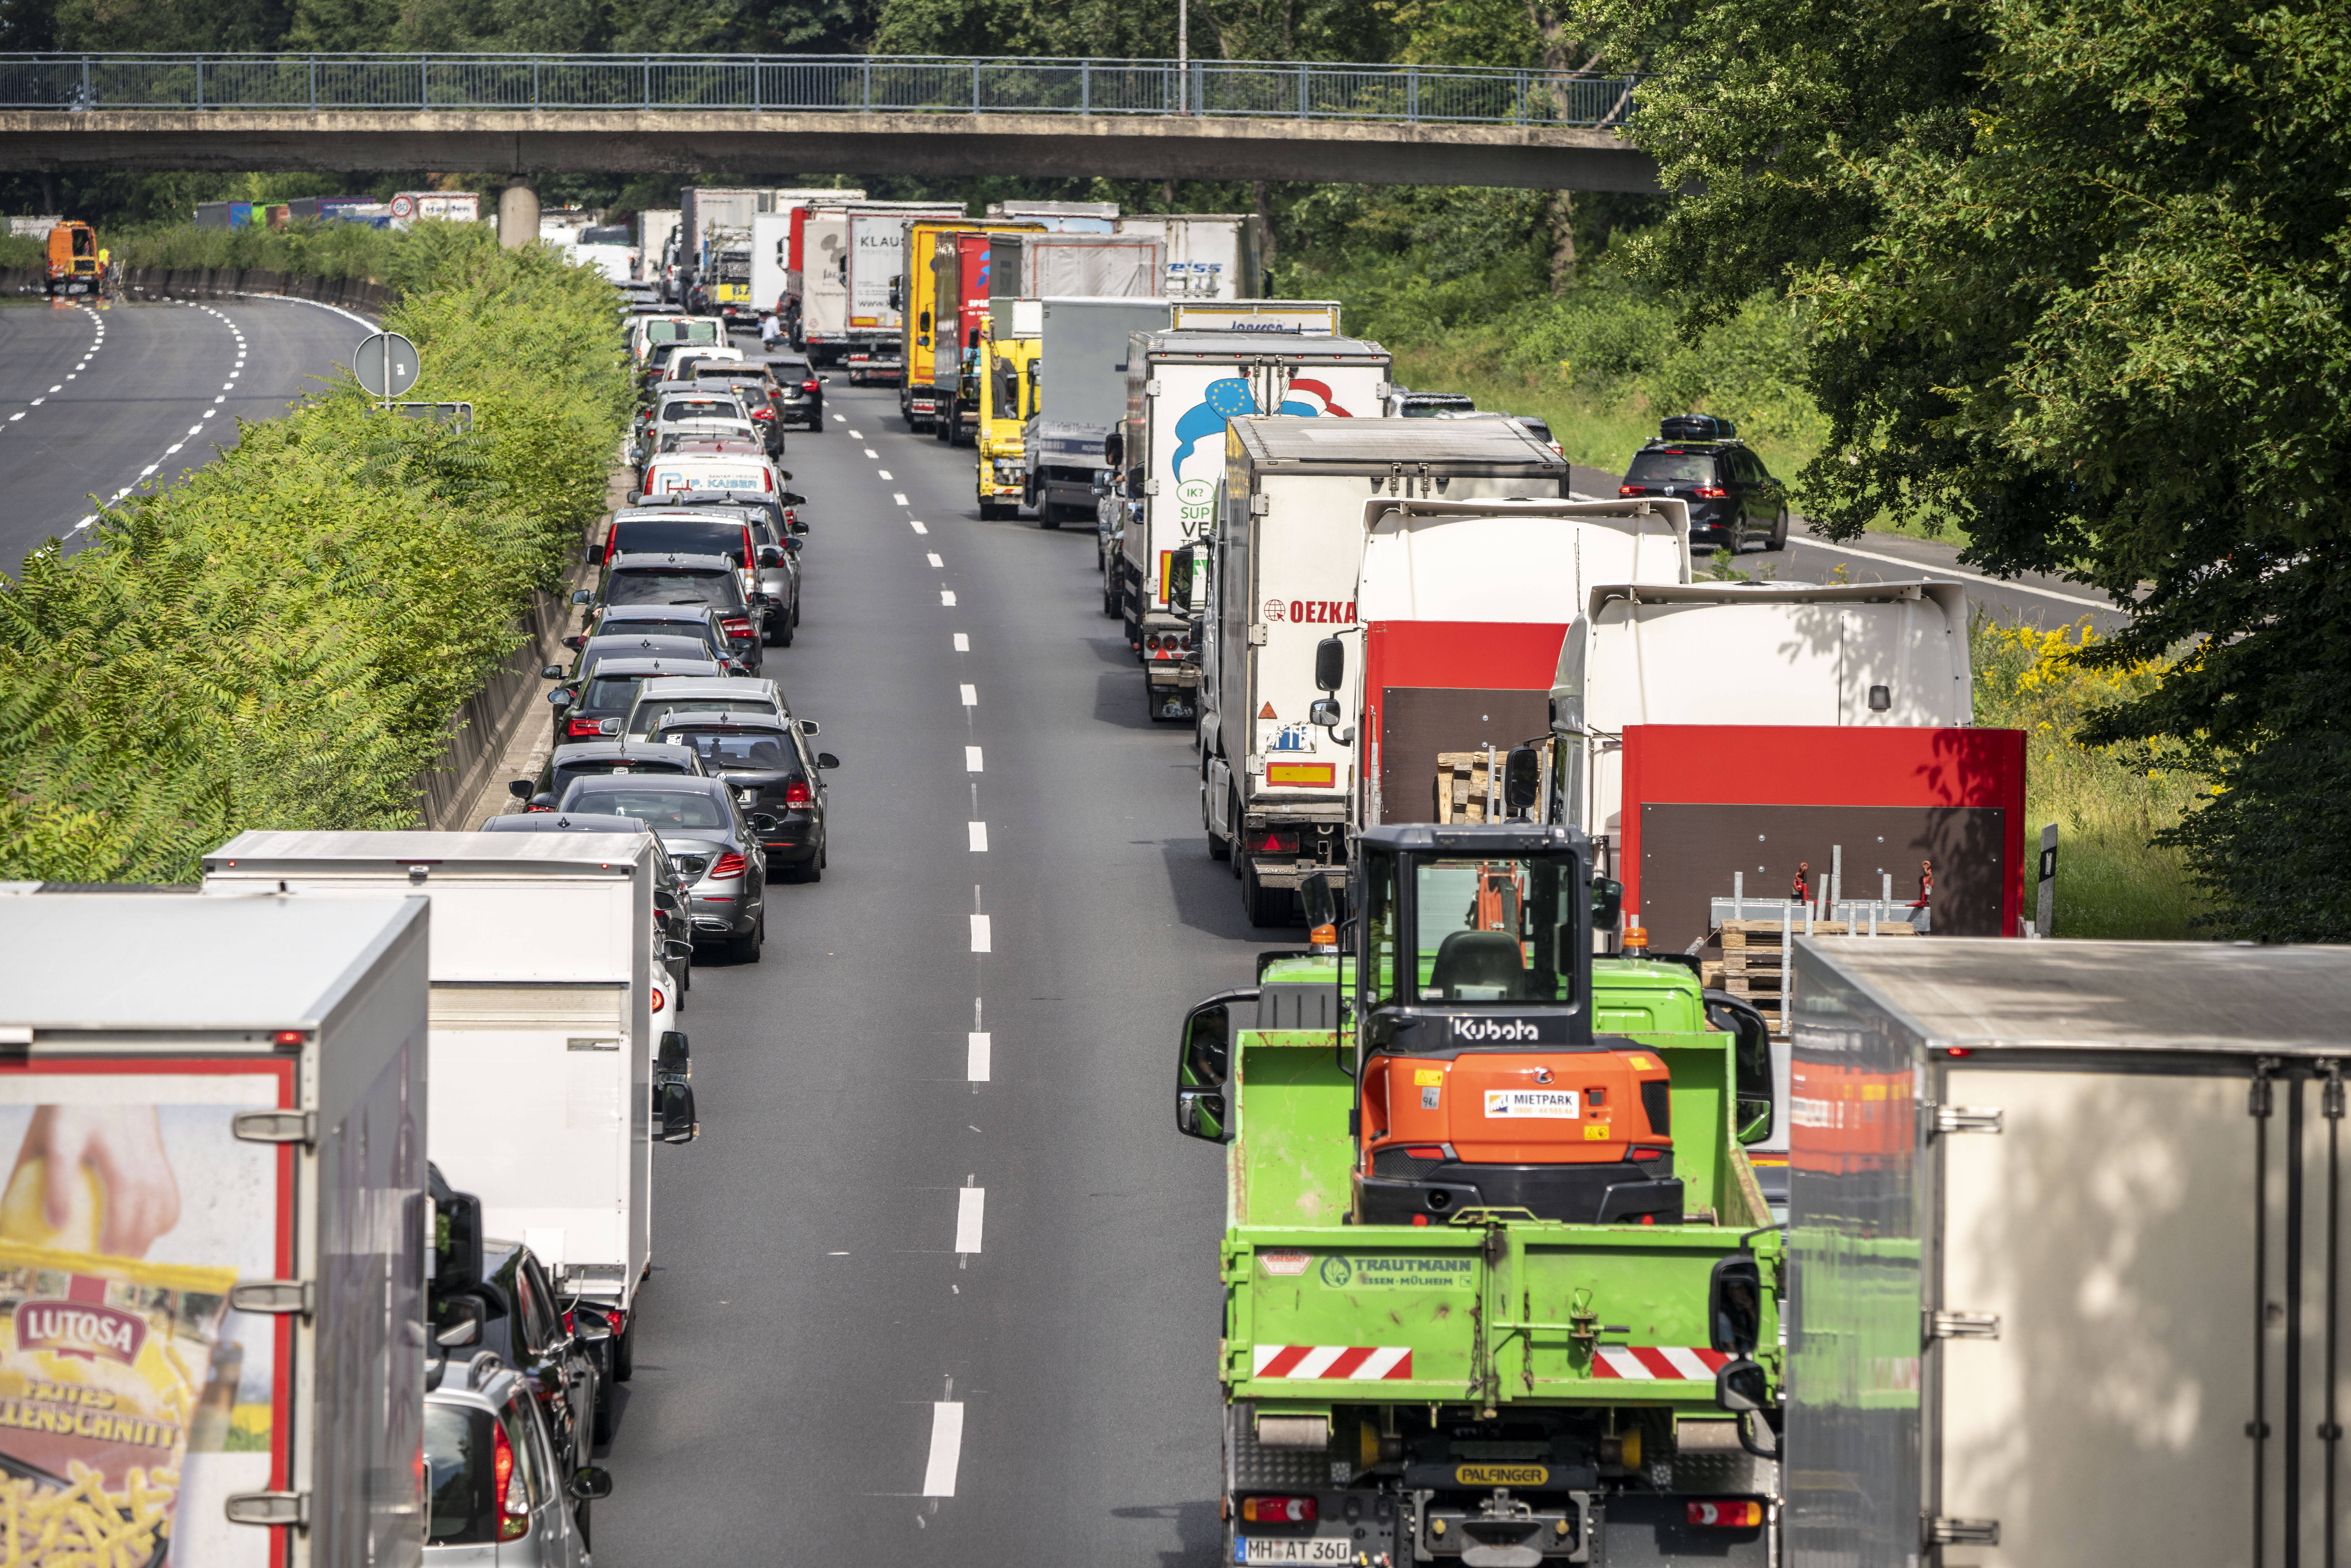 Vollsperrung - 15 Wochen lang! Diese Autobahn bleibt für 15 Wochen gesperrt, Pendler-Chaos erwartet